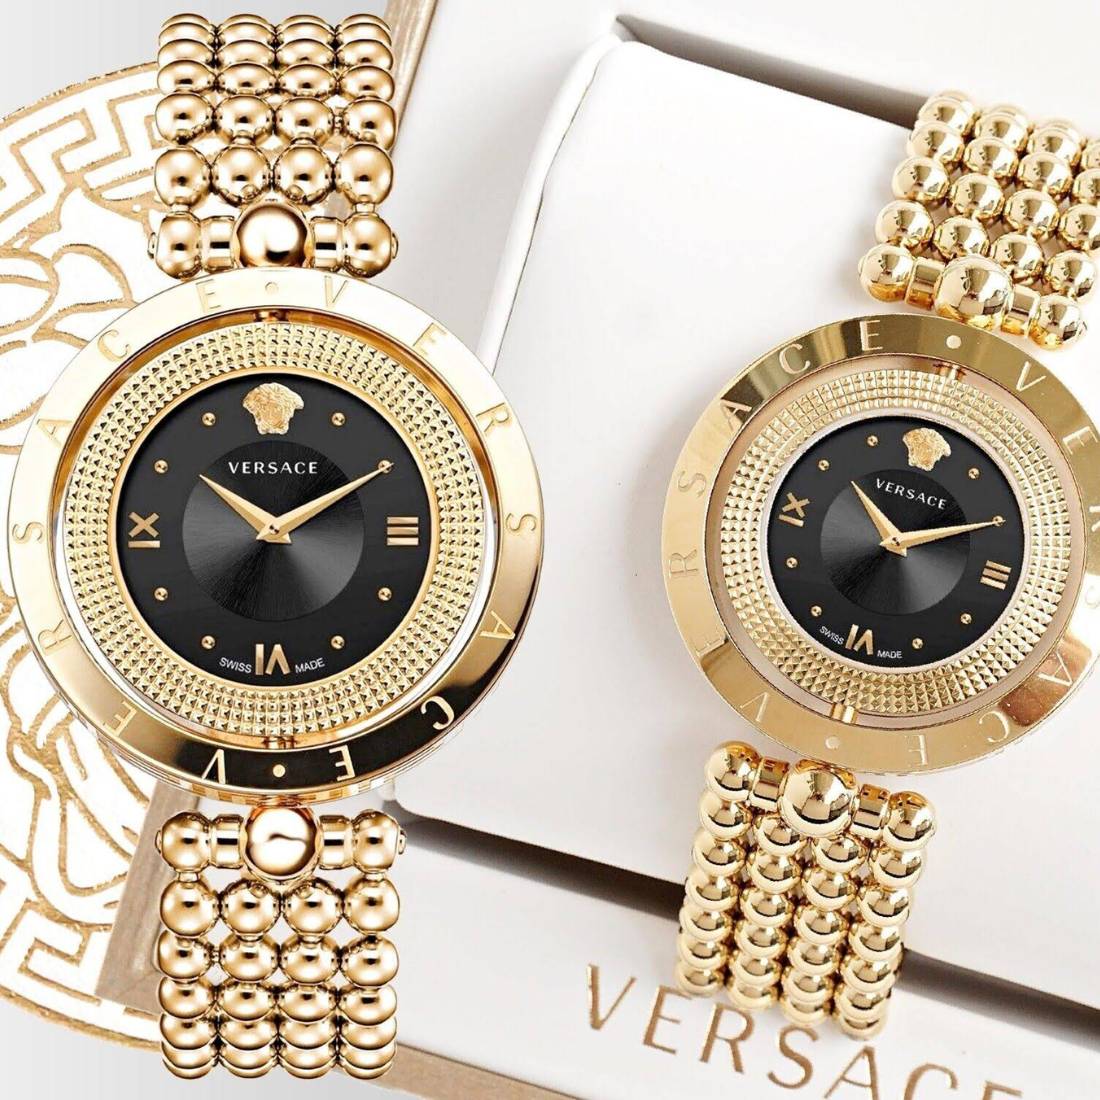 Zegarek damski Versace VE7901723 Eon